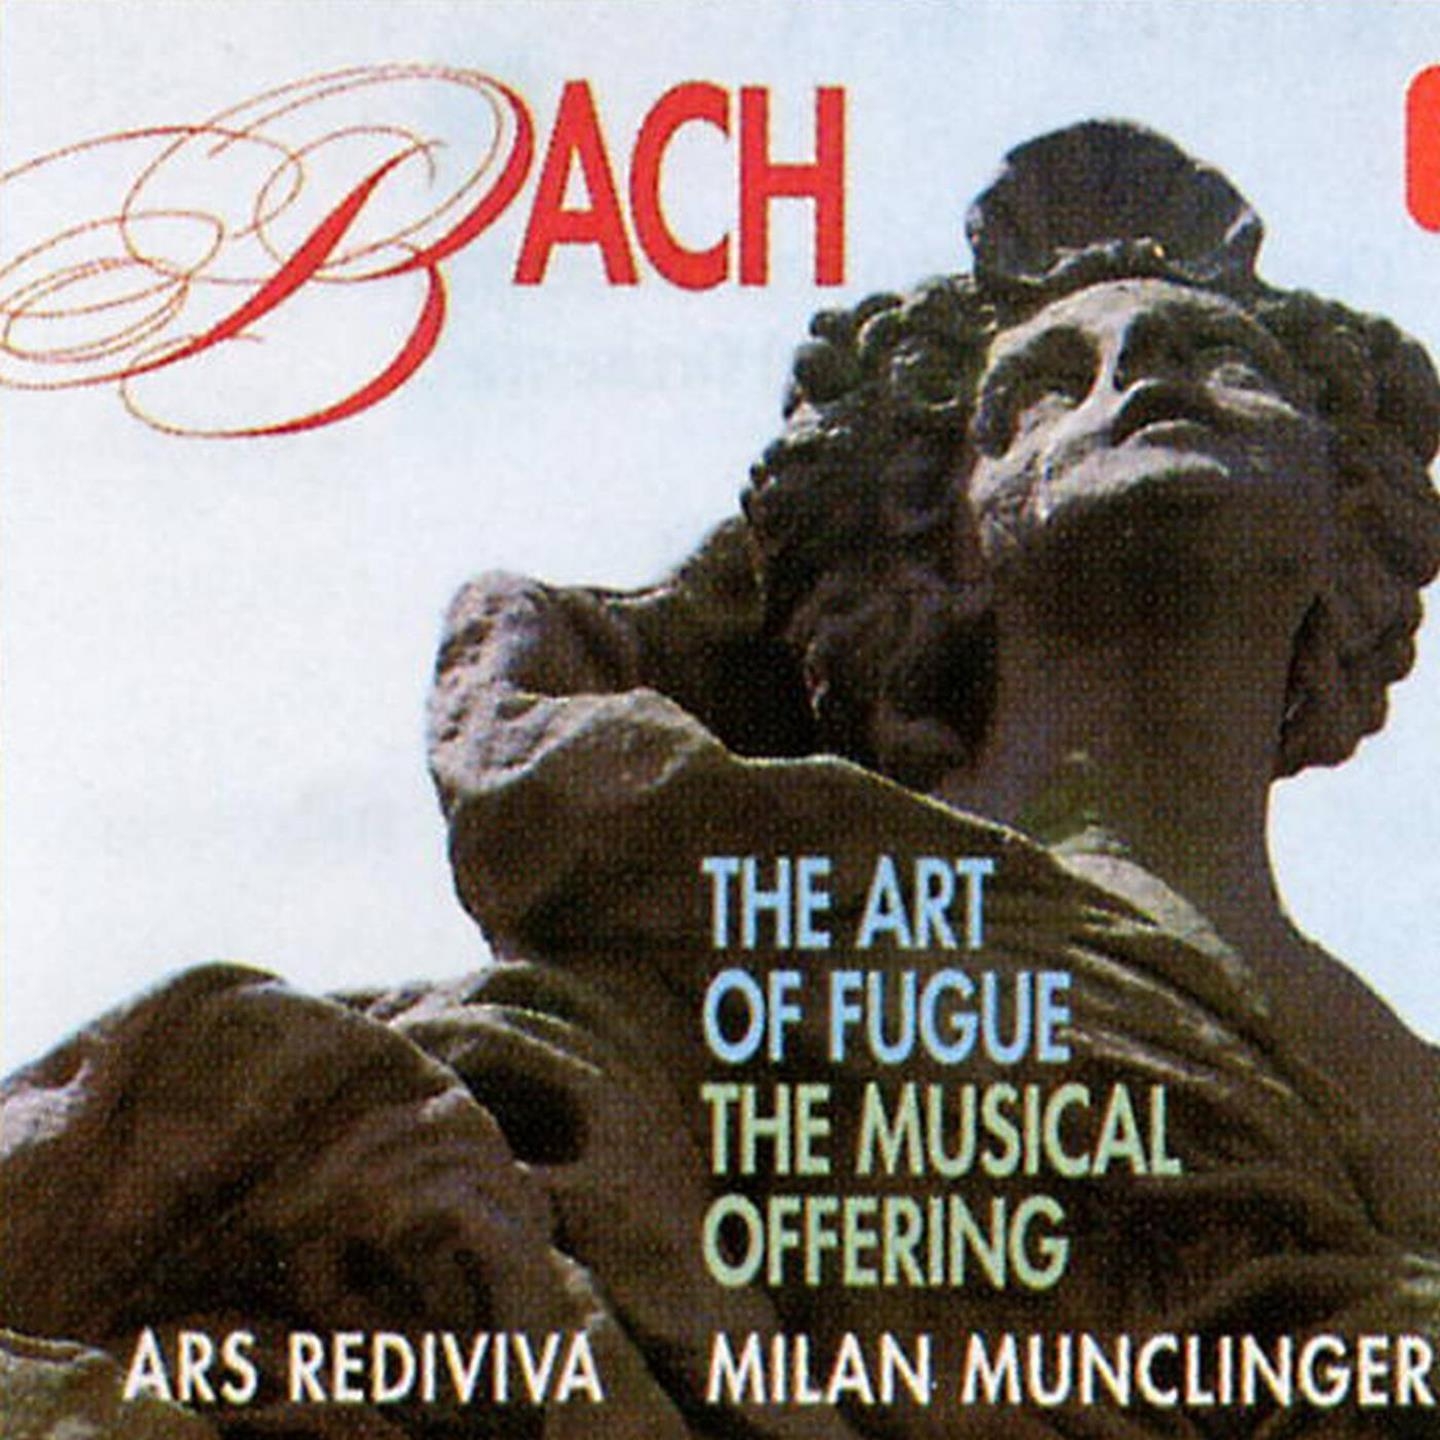 The Musical Offering, Op. 6, BWV 1079, Sonata sopr' il soggetto Reale: II. Allegro